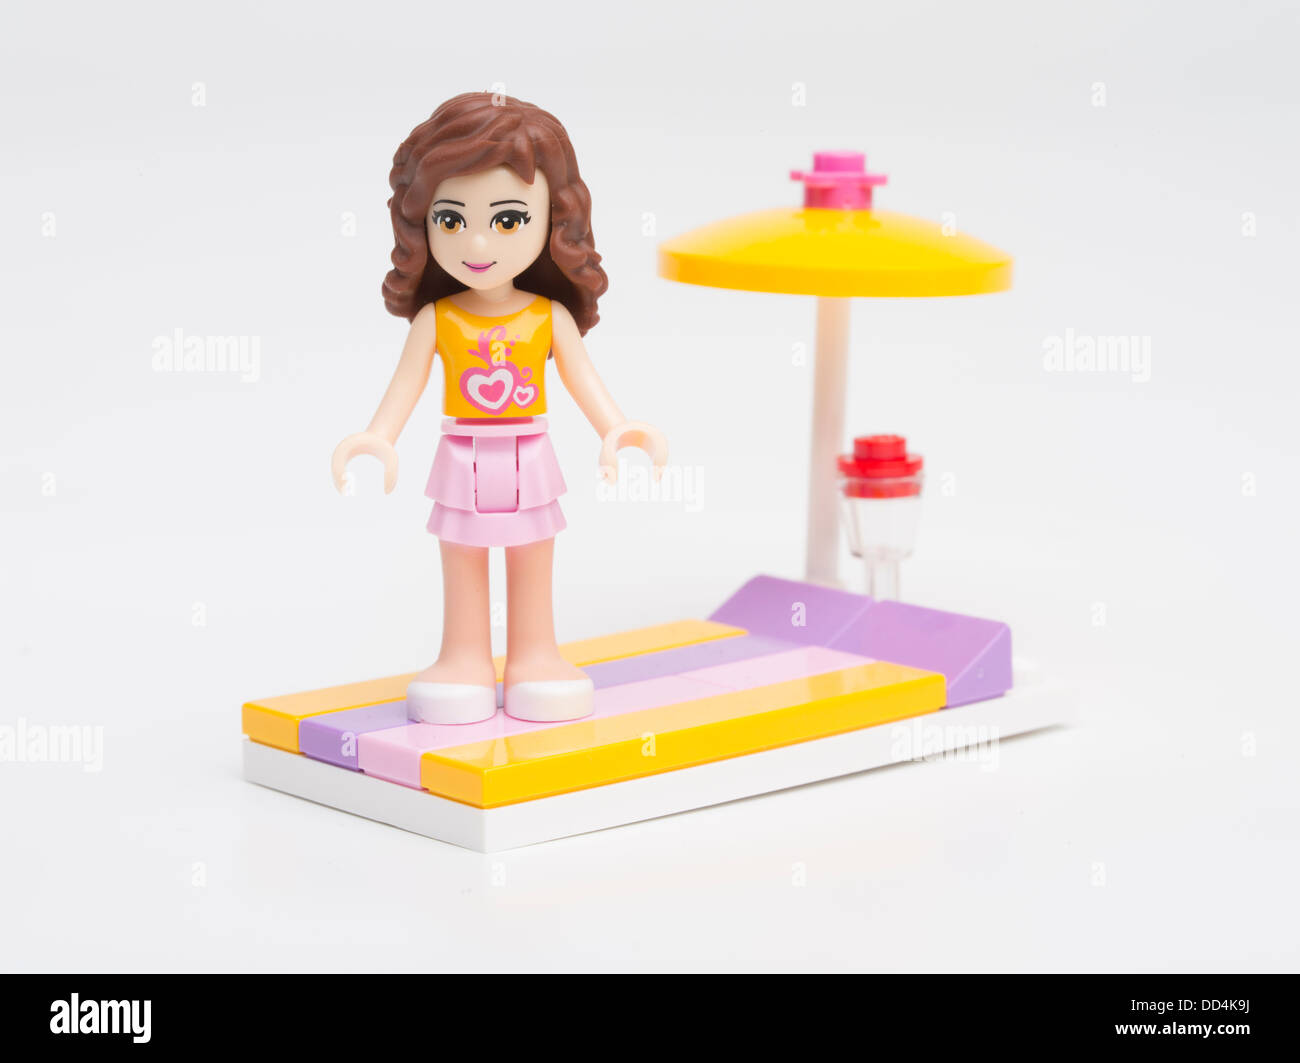 Olivia eine Lego Friends Mini-Puppe 2012 eingeführten Appell an Mädchen mit  Badetuch und Sonnenschirm Stockfotografie - Alamy